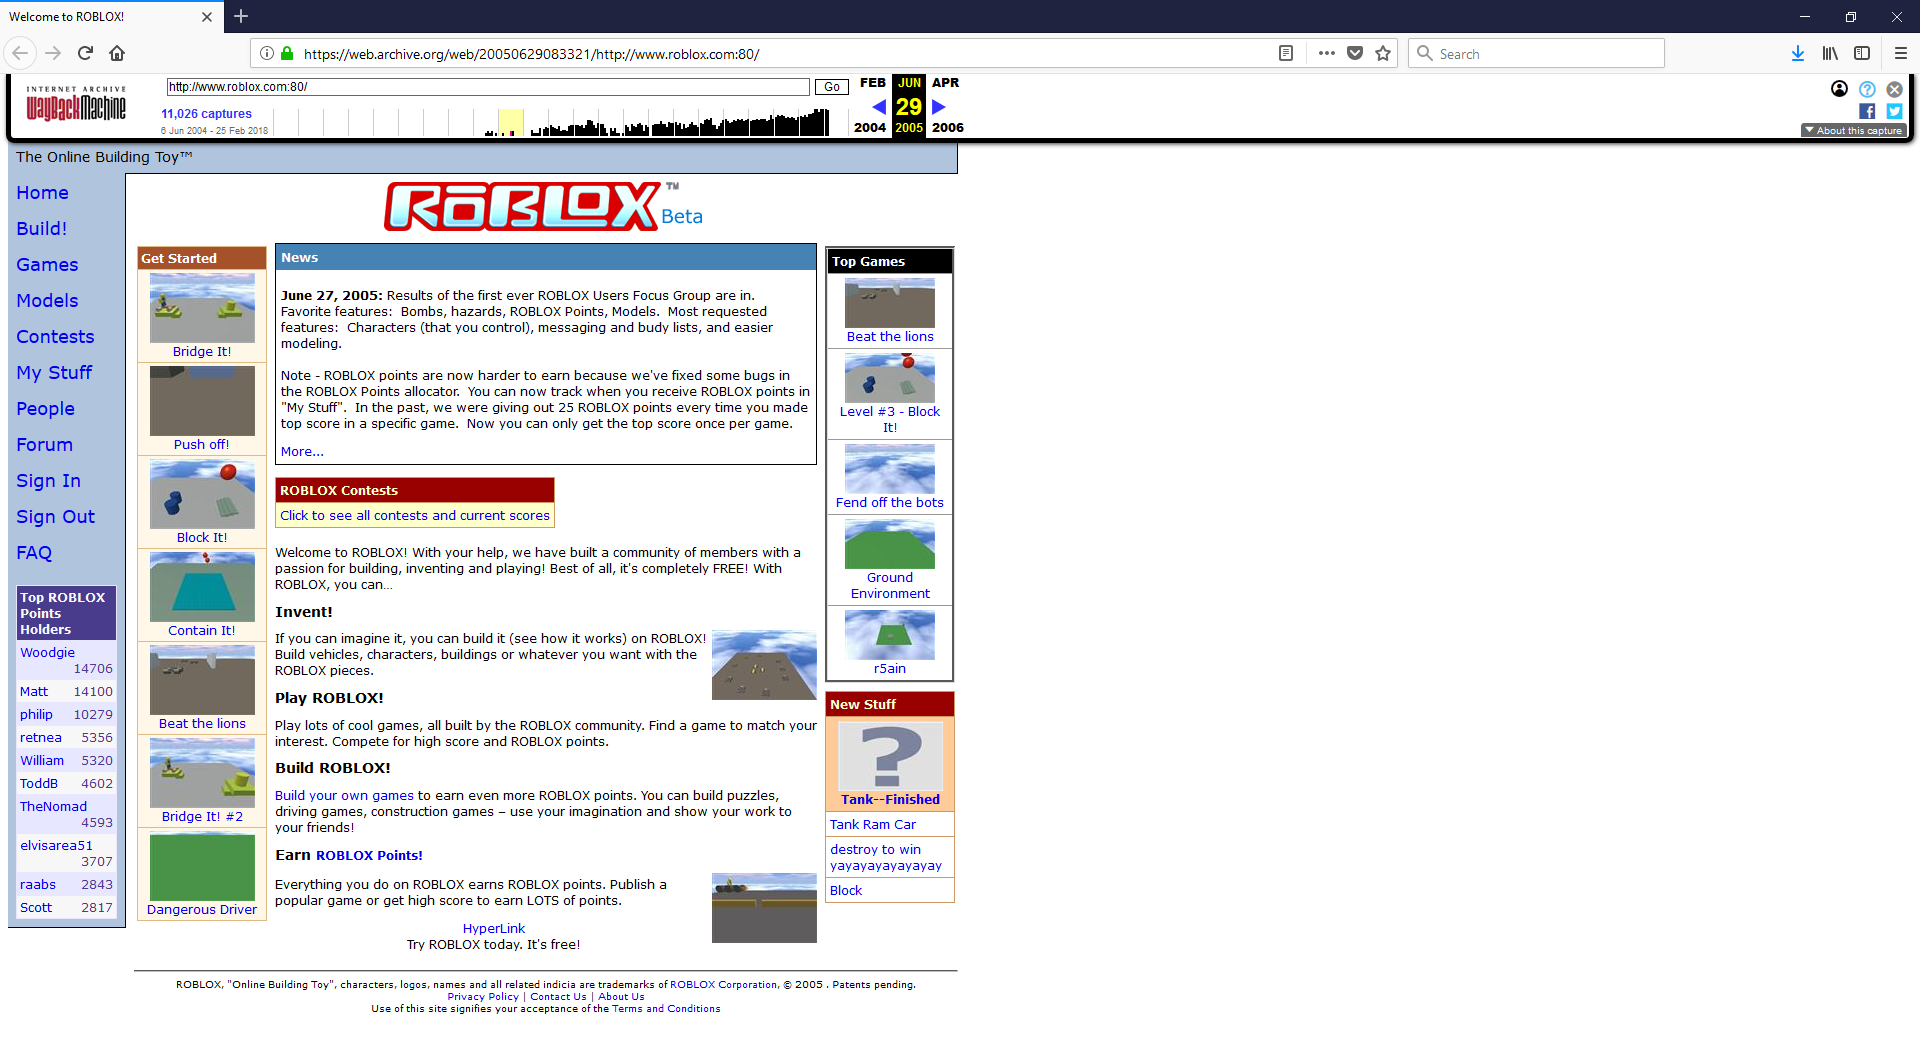 Roblox 2005 Klasky678 Wiki Fandom - 2005 roblox games